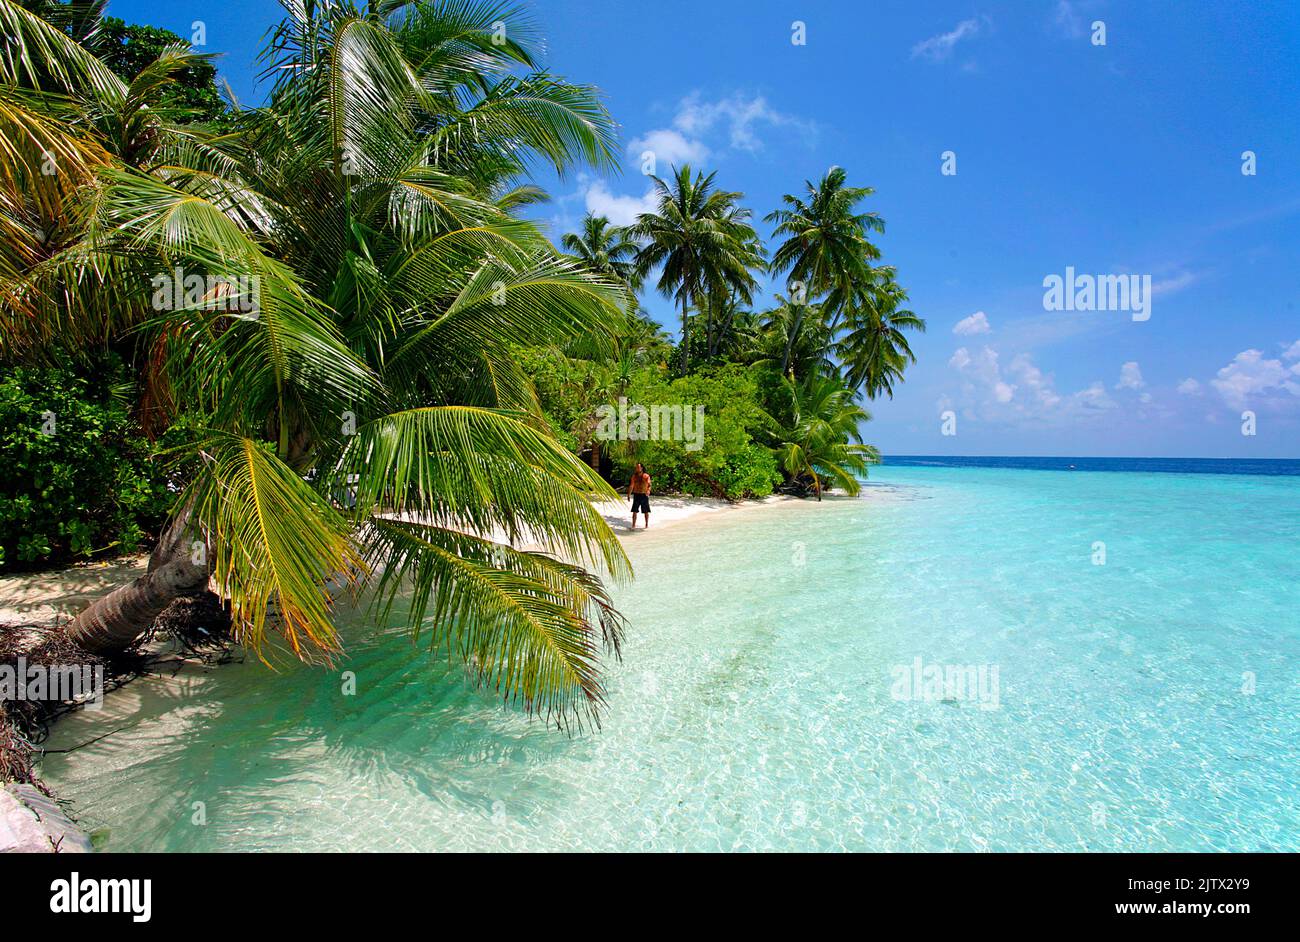 Plage, palmiers et lagon turquoise d'une île maldivienne inhabitée, Maldives, Océan Indisan, Asie Banque D'Images